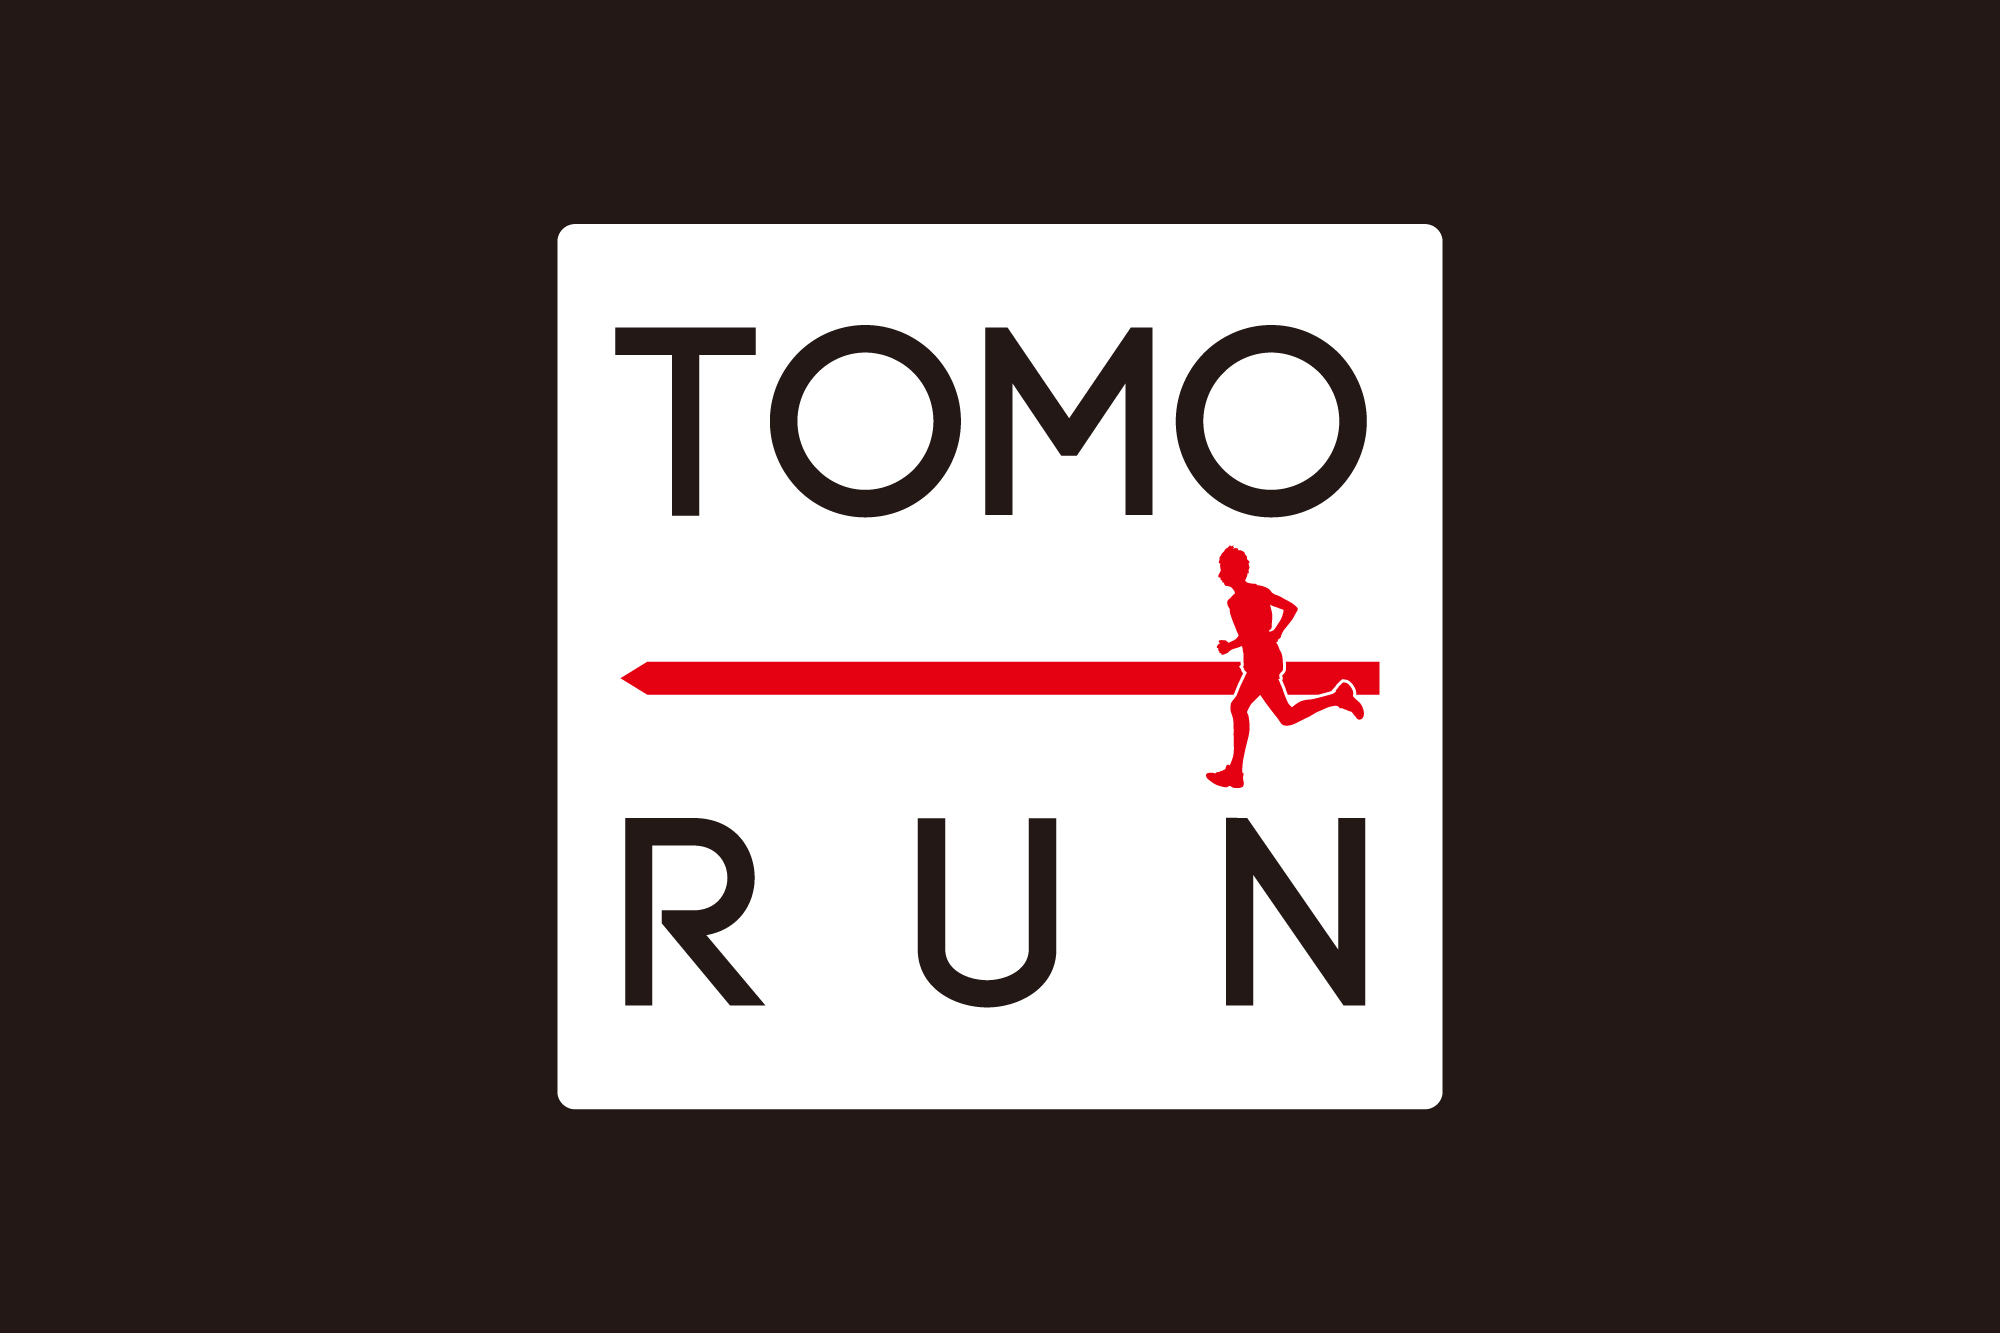 TOMO RUN